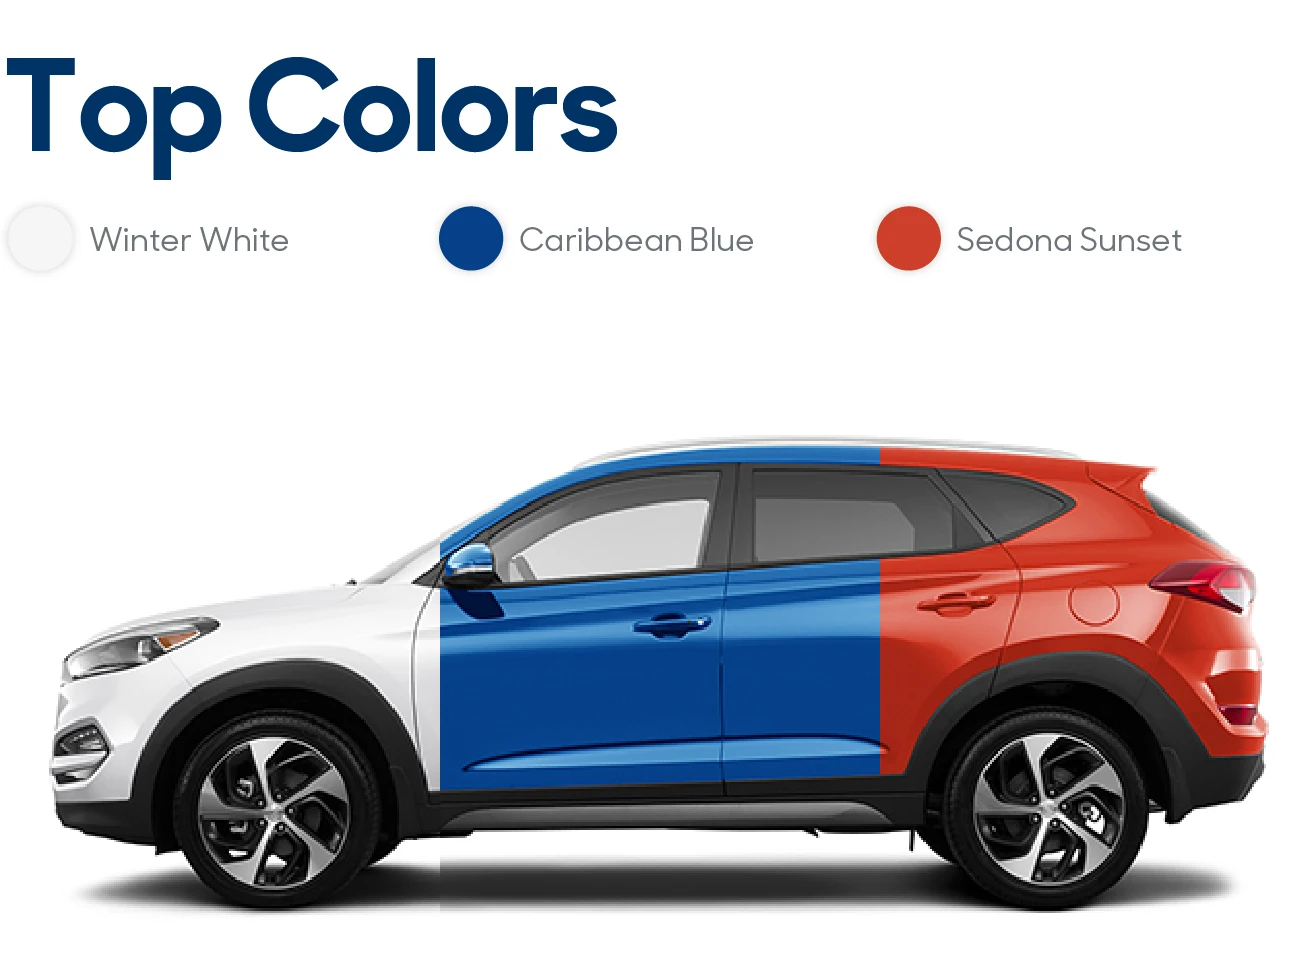 2016 Hyundai Tucson Review: Top Colors | CarMax